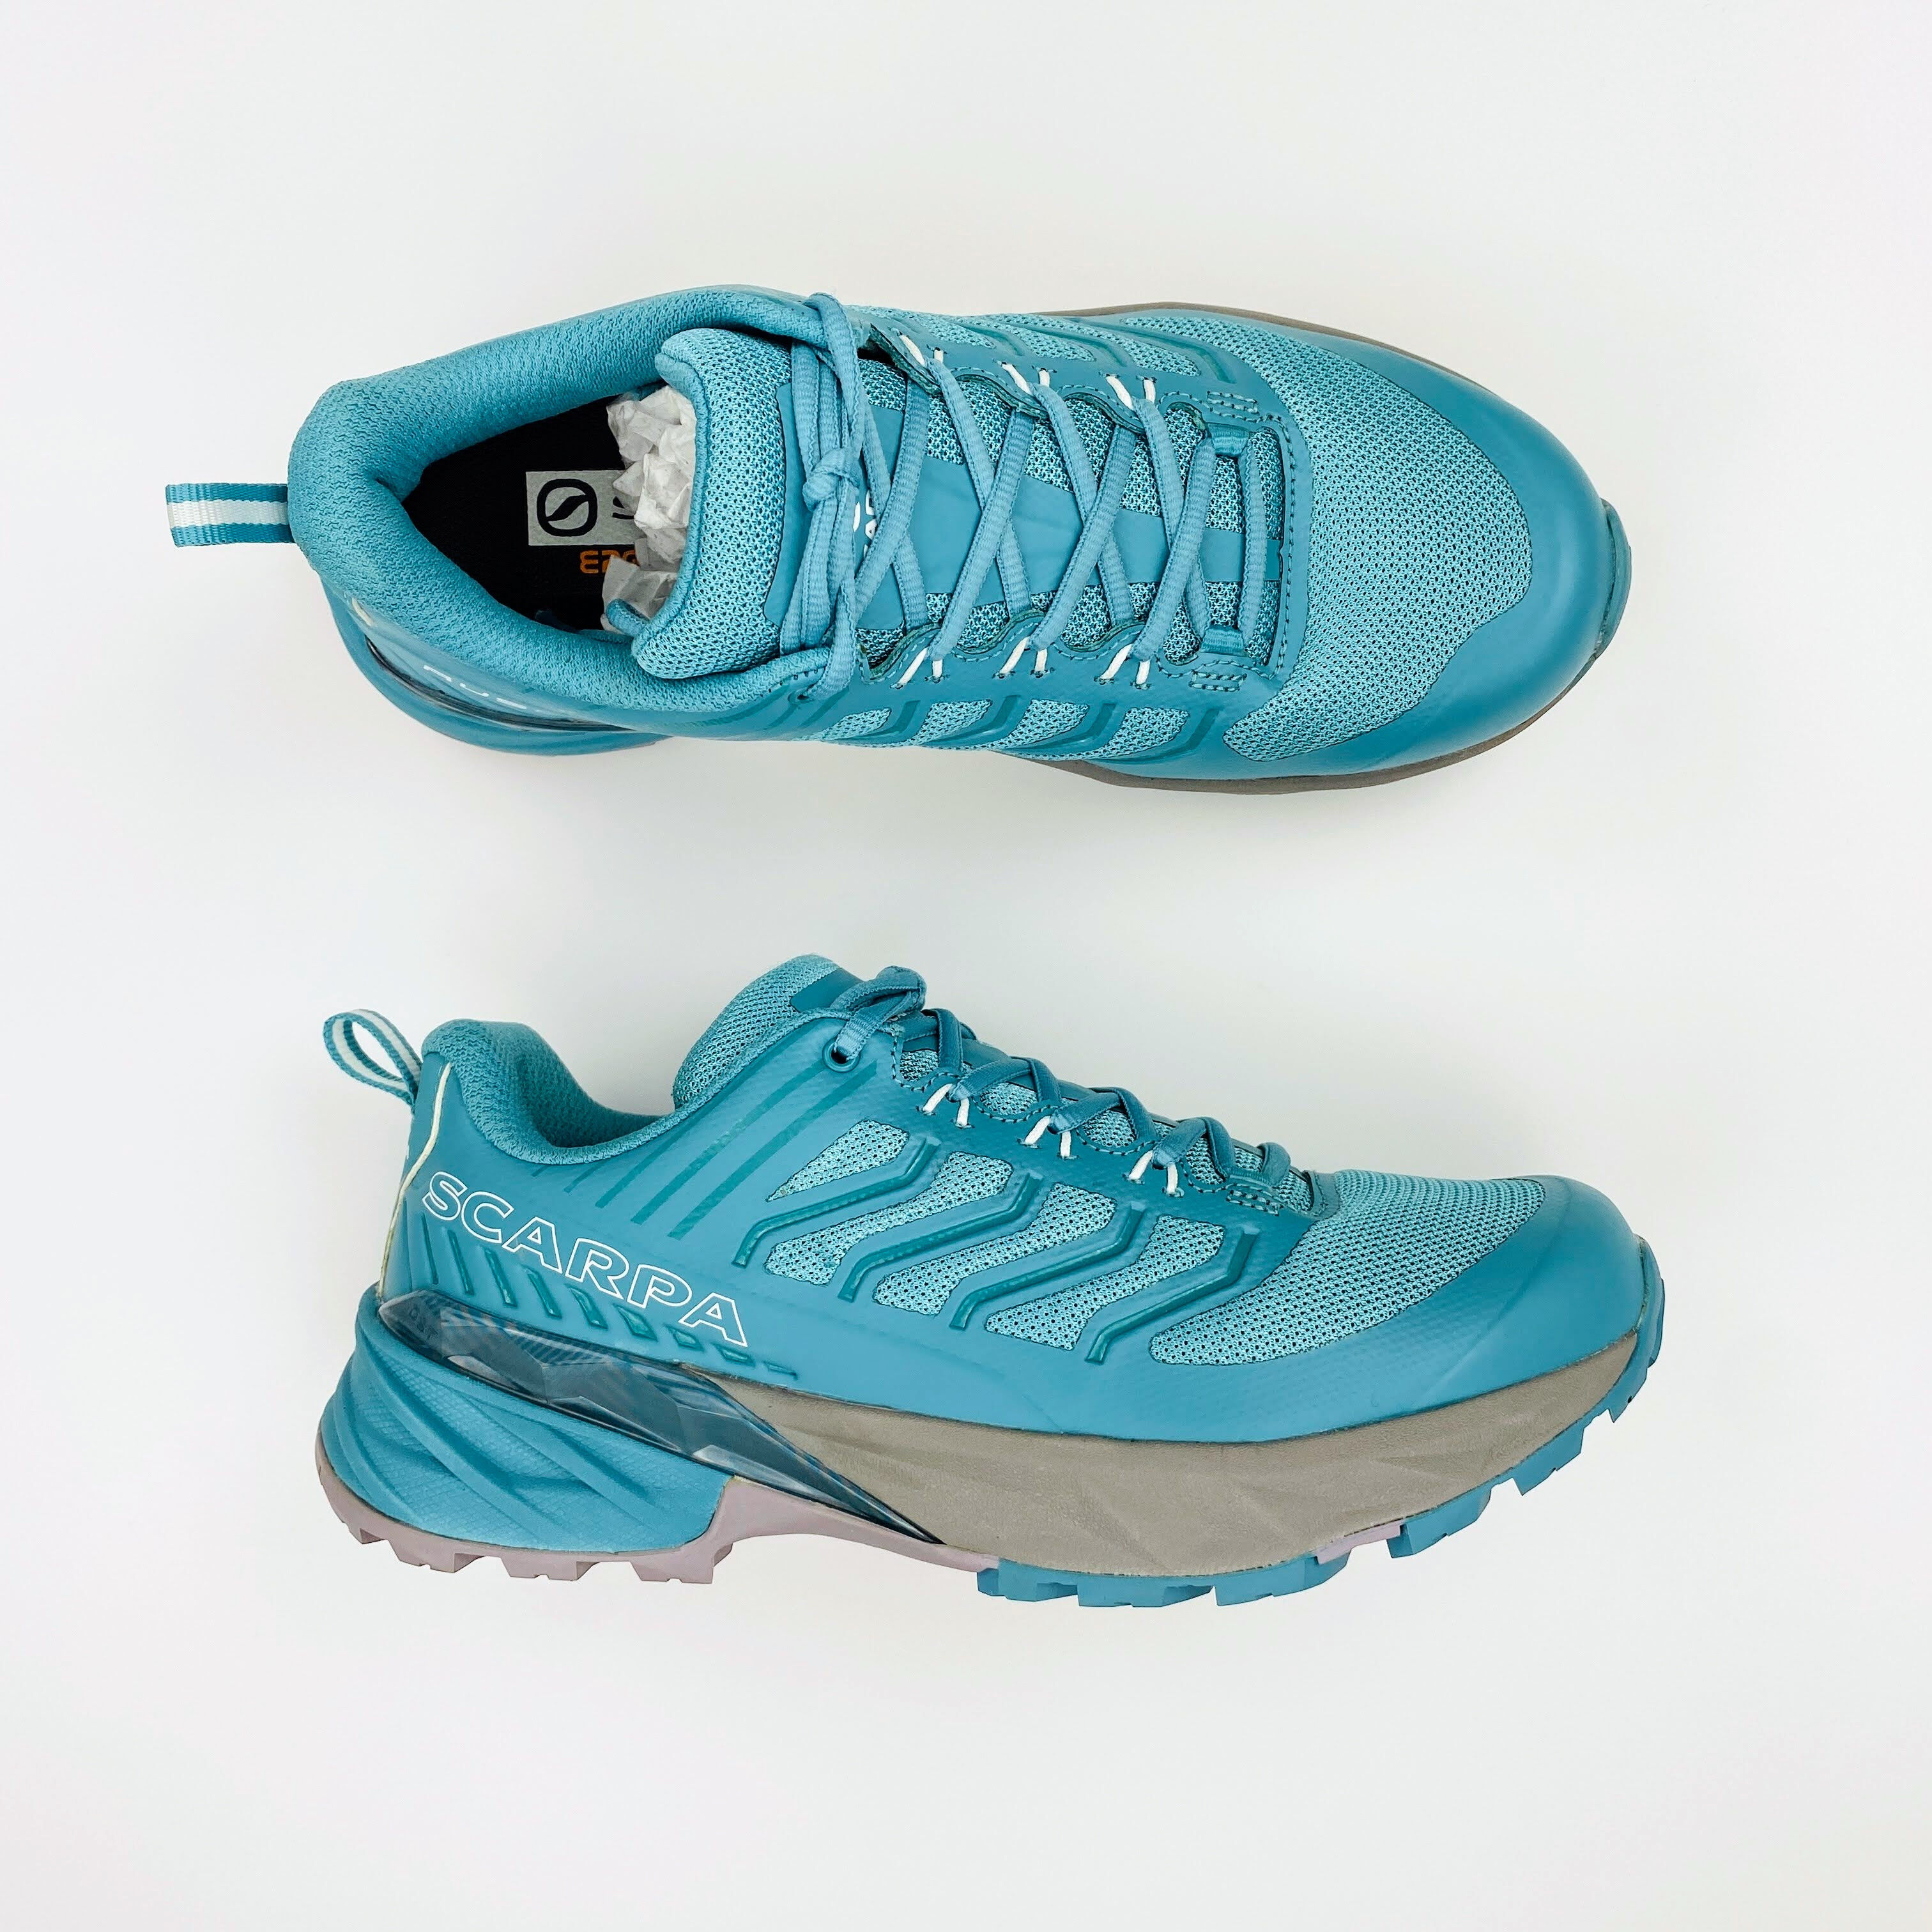 Scarpa Rush Wmn - Second Hand Dámské trailové běžecké boty - Modrý - 38 | Hardloop